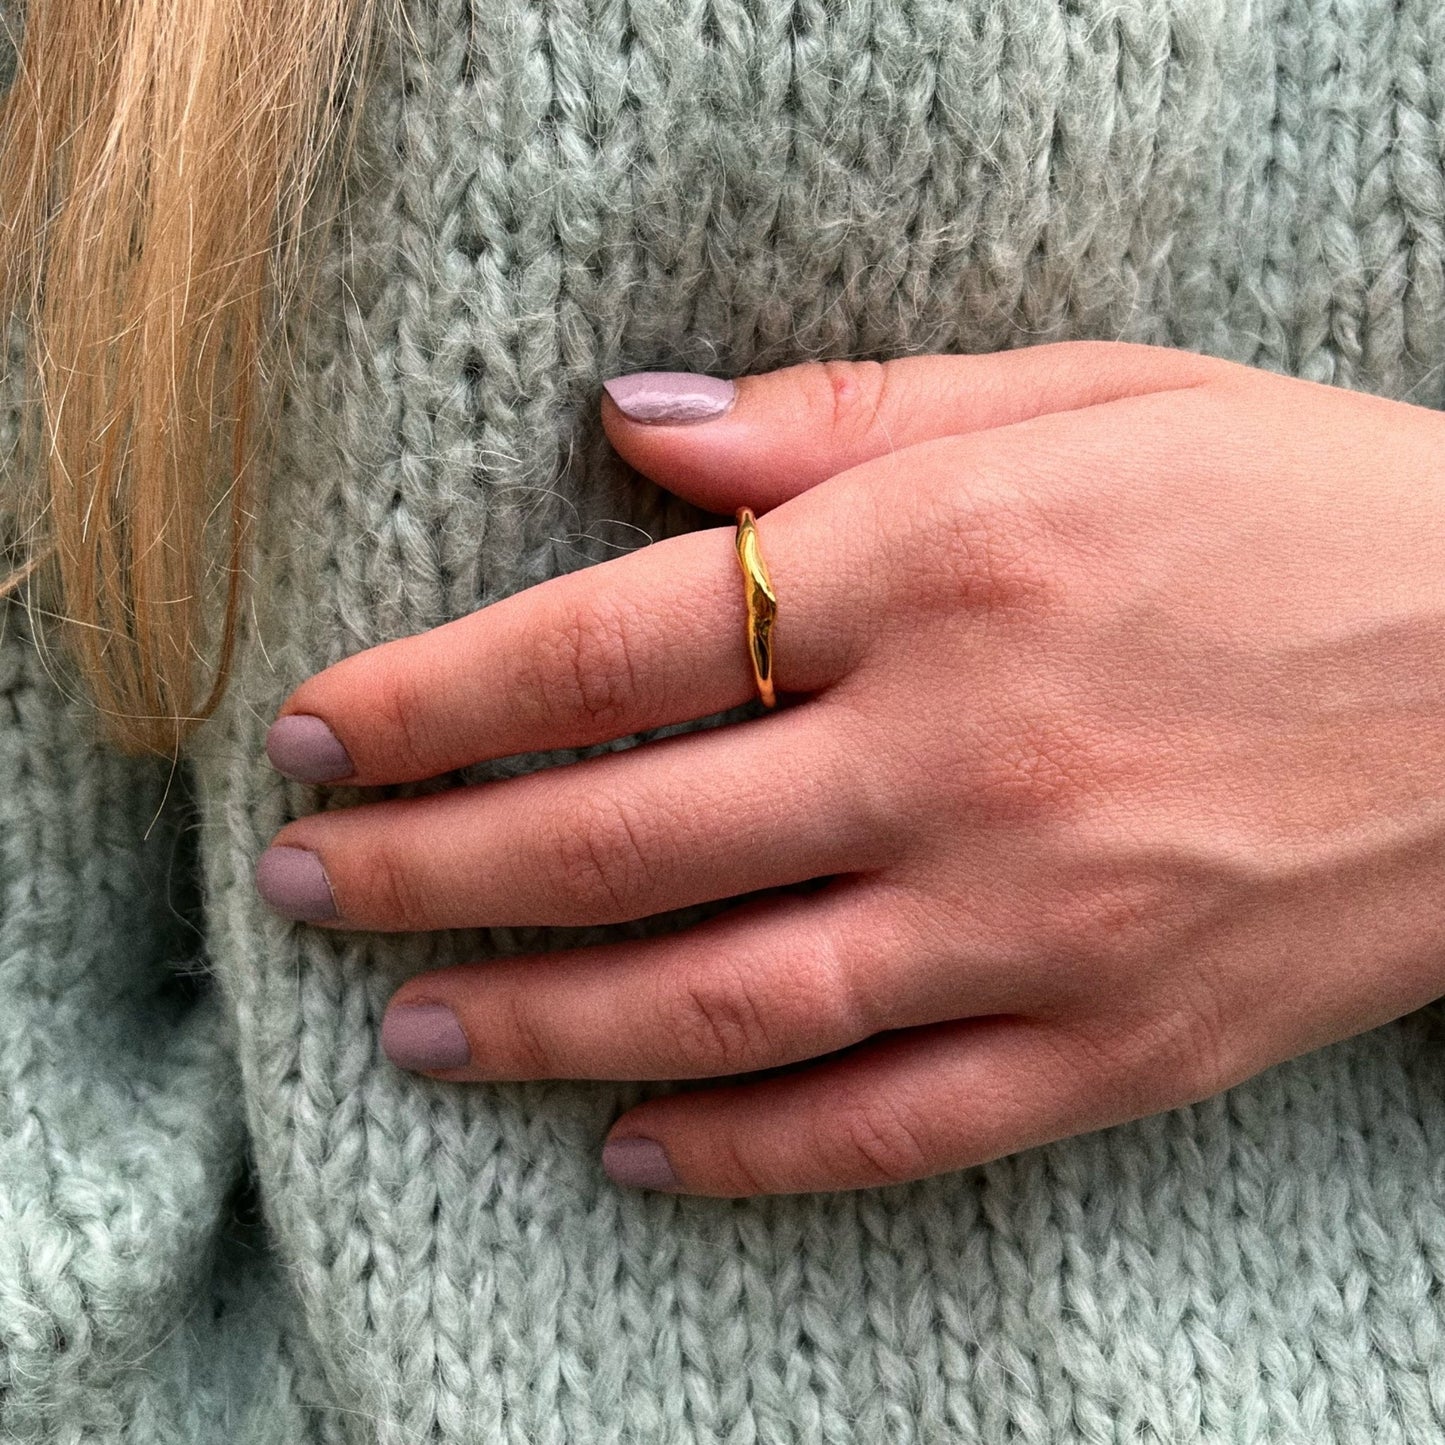 Perlové prsteny, Dámské prsteny s perlou, Prsten s perličkami, perlový prstýnek, stříbrný prsten s pravou perlou, Otevřený prsten s perlou, Prsten s říční perlou, stříbrný perlový prsten, minimalistický prsten, otevřený prsten